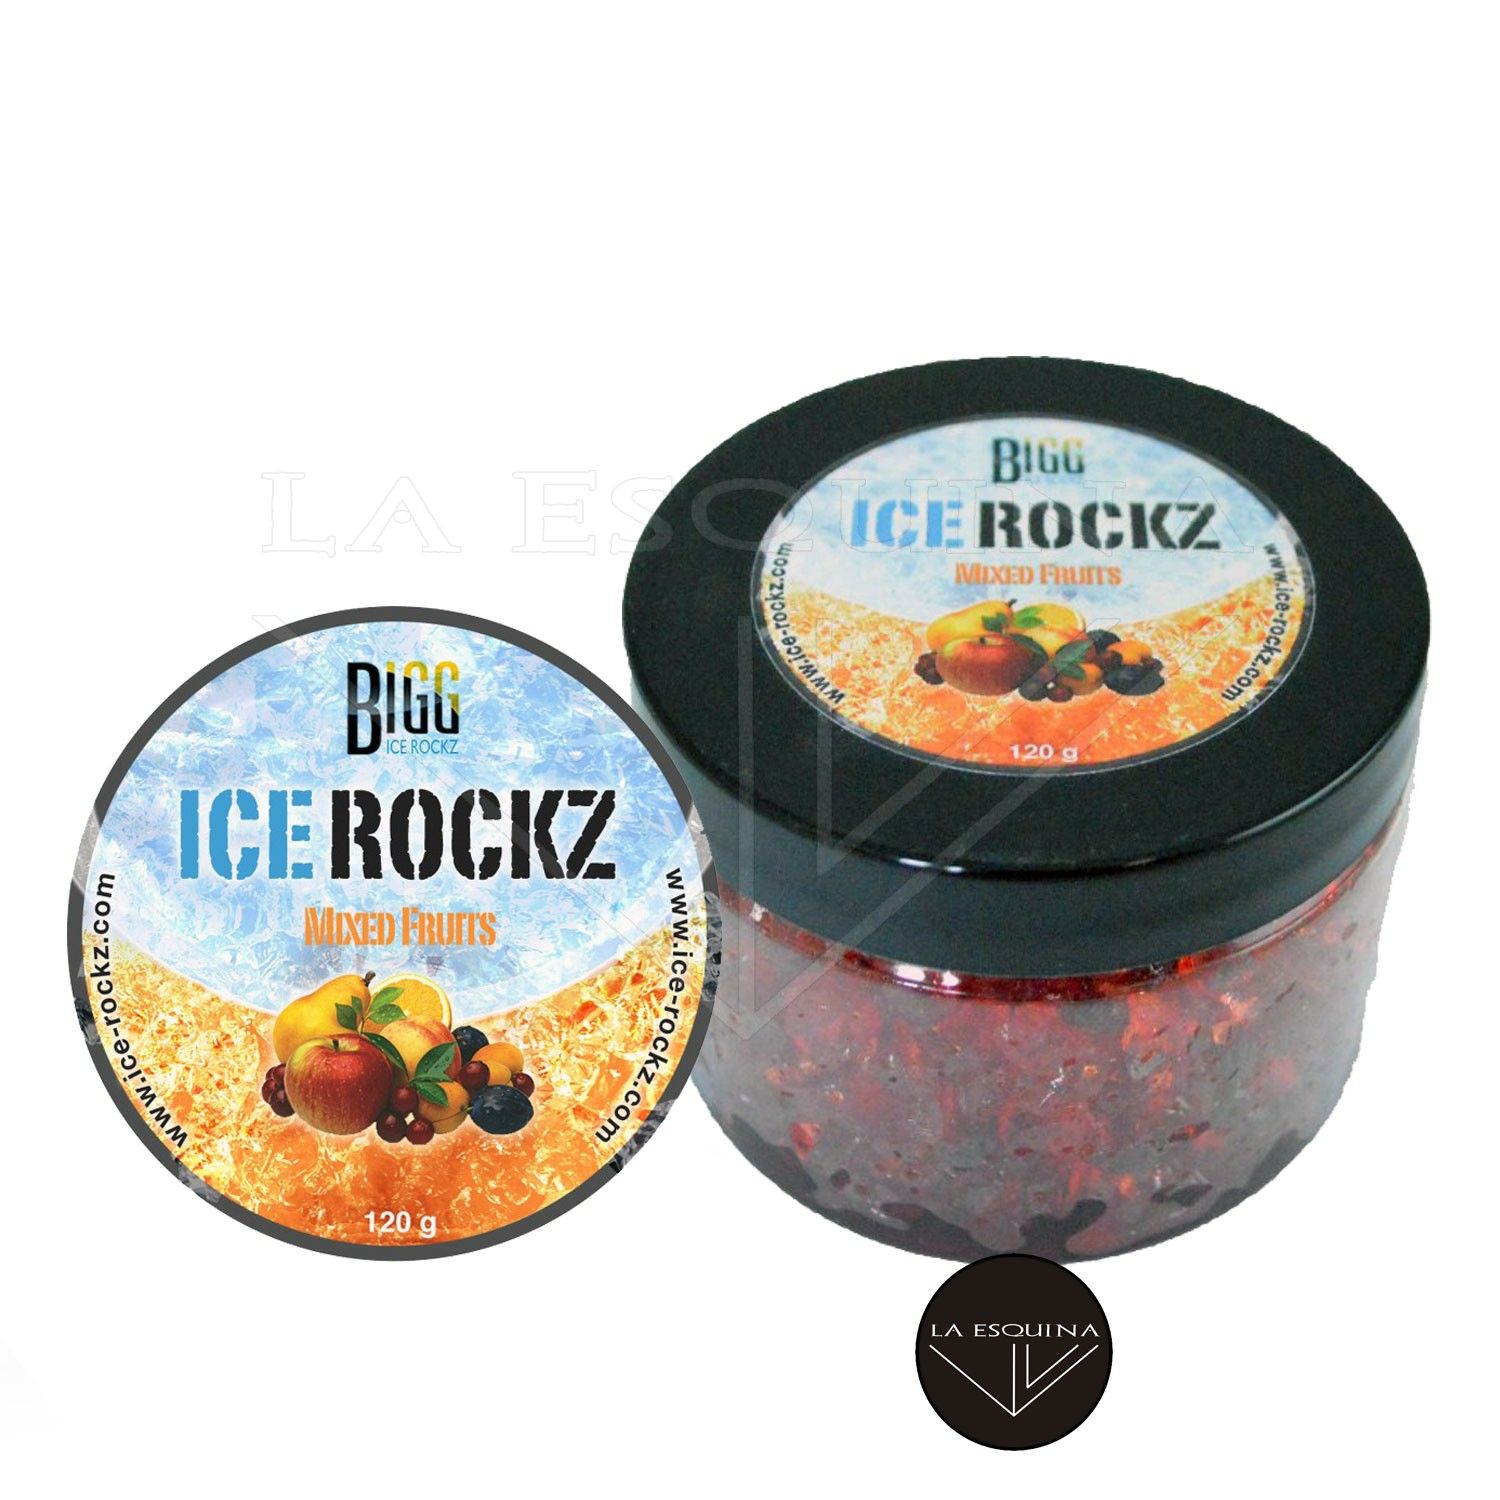 Gel Rock de Cachimba BIGG ICE ROCKZ – 120 g. – Mixed Fruits